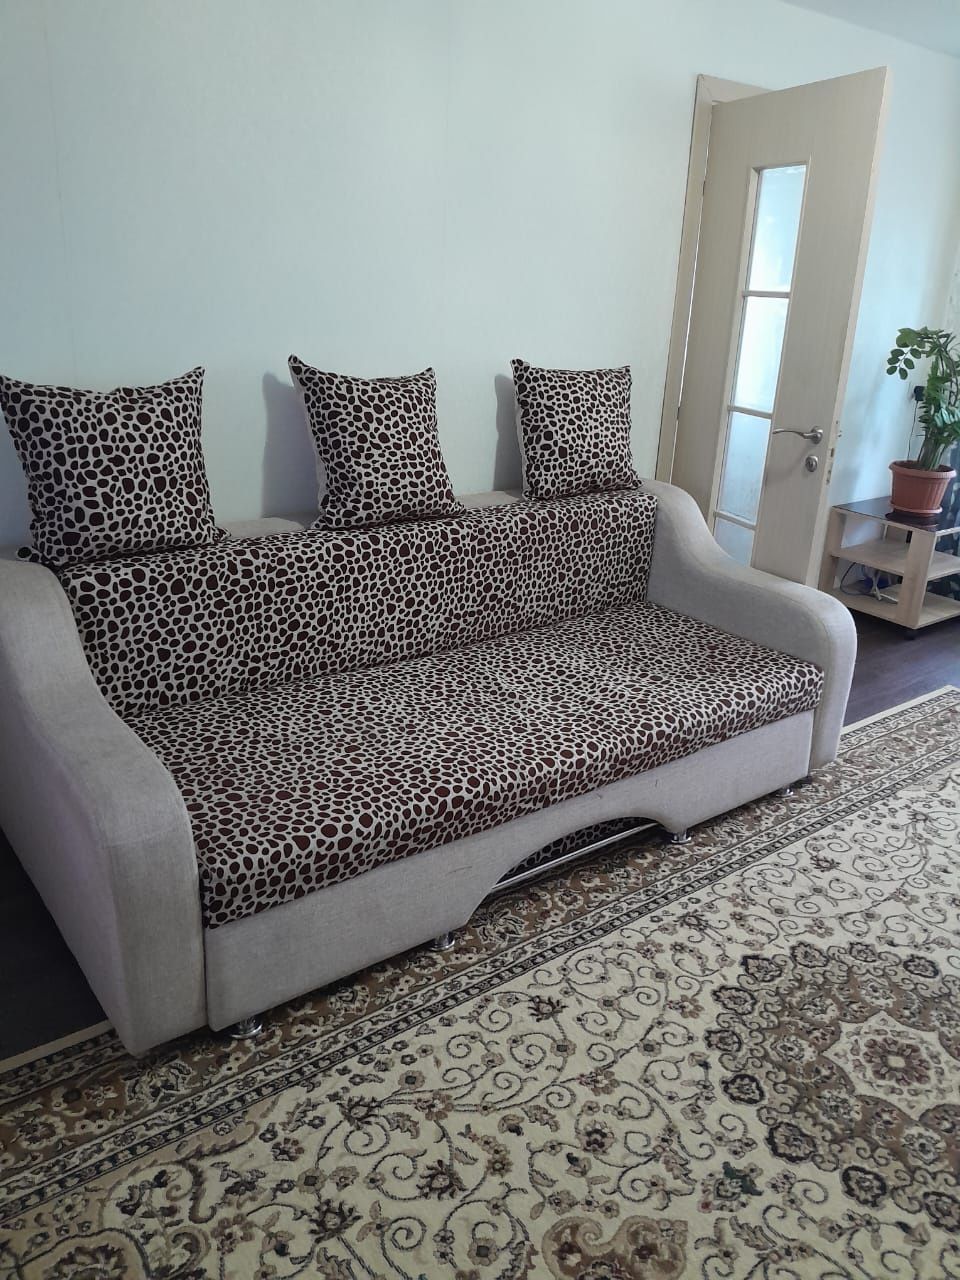 Продается диван с кресло -кроватью в хорошем состояний